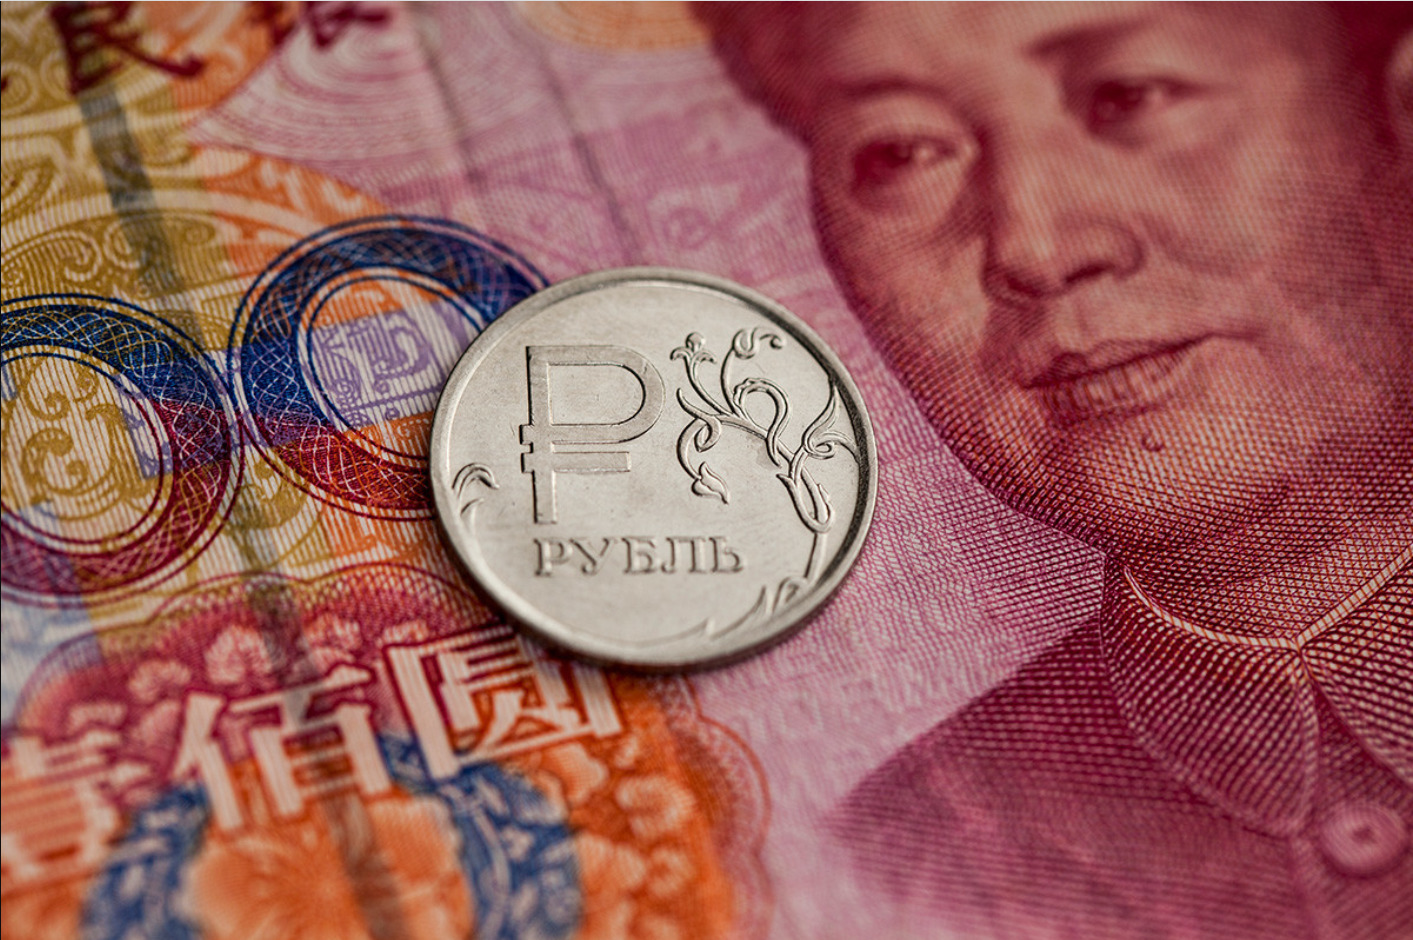 Июань. Юани в рубли. Китайский юань. Валюта Китая. Китайские юани в рубли.